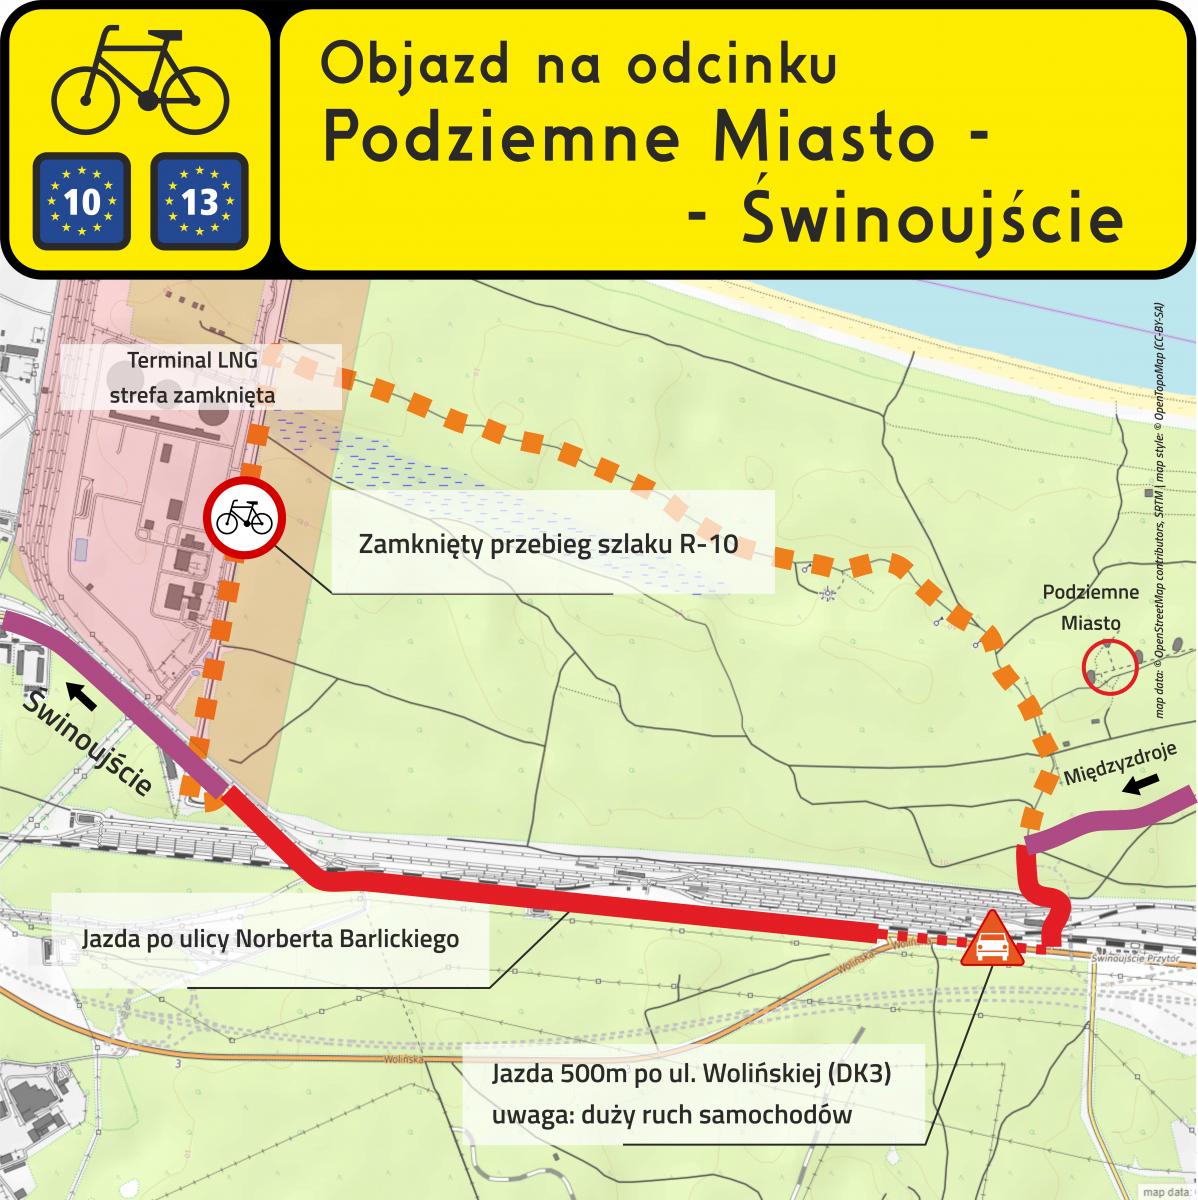 Zmiana przebiegu trasy rowerowej R-10 w kierunku Świnoujścia